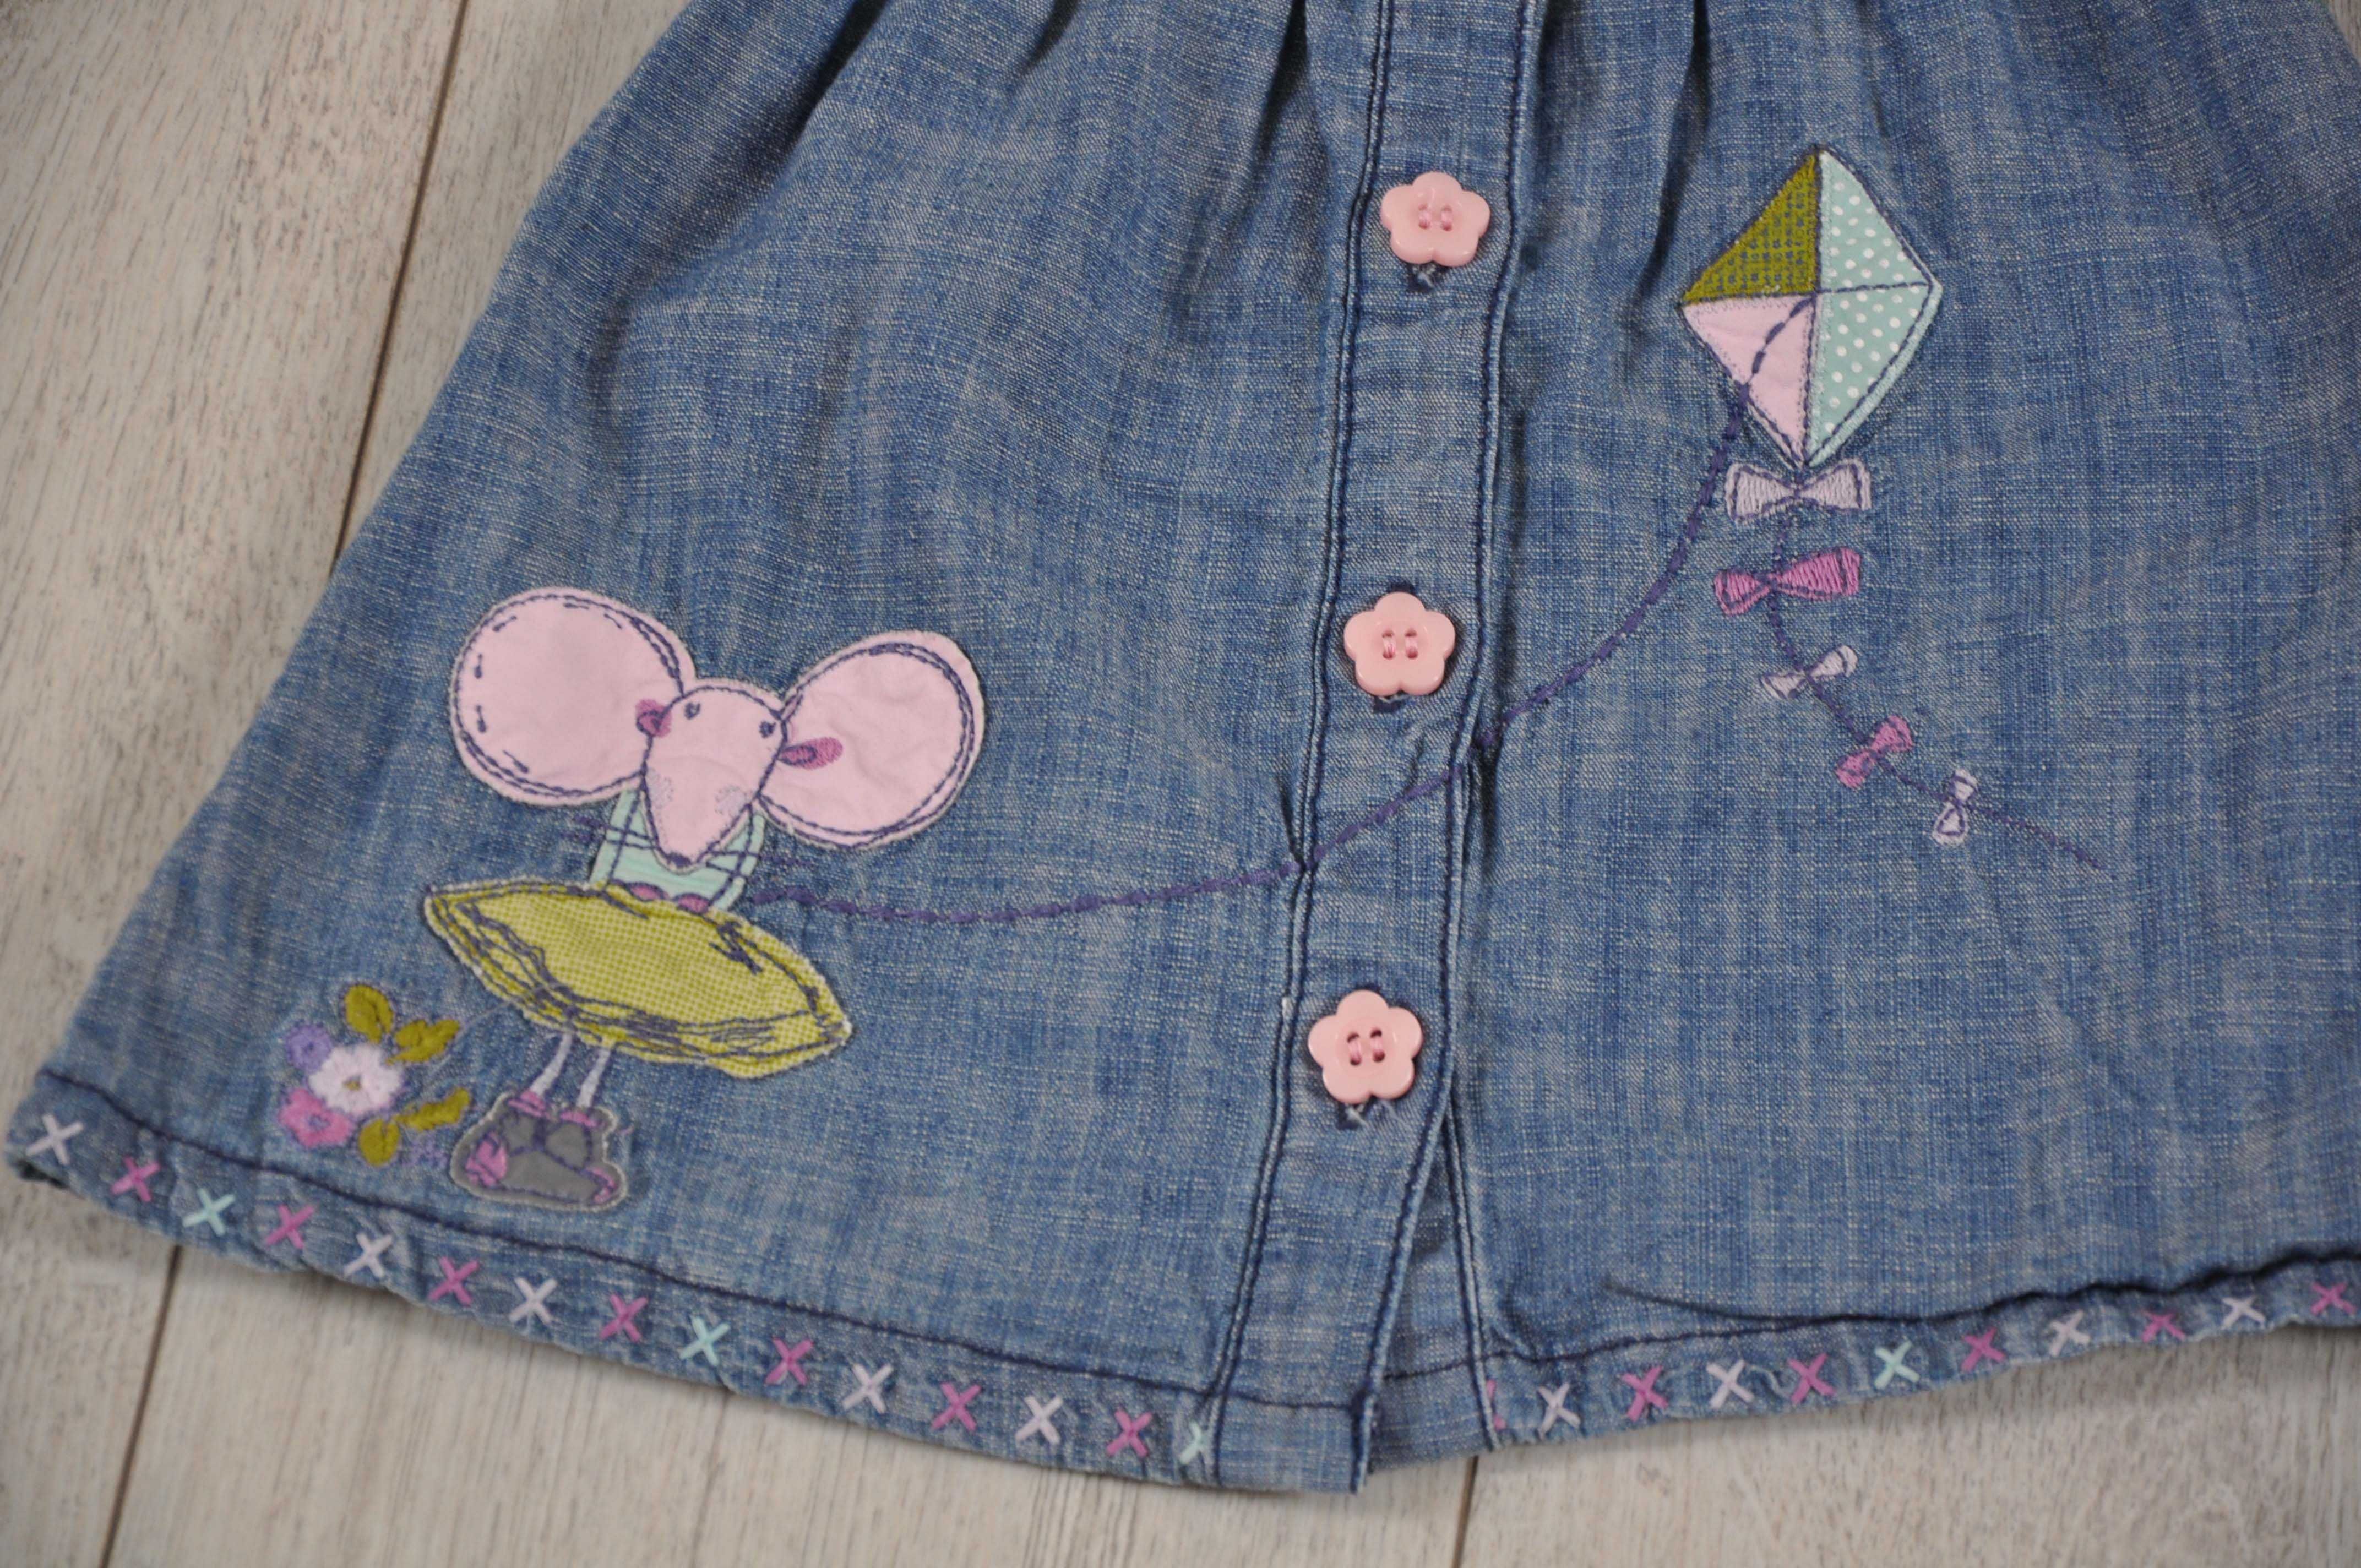 Komplet sukienek dla dziewczynki jeans bawełna falbanki r. 68 cm